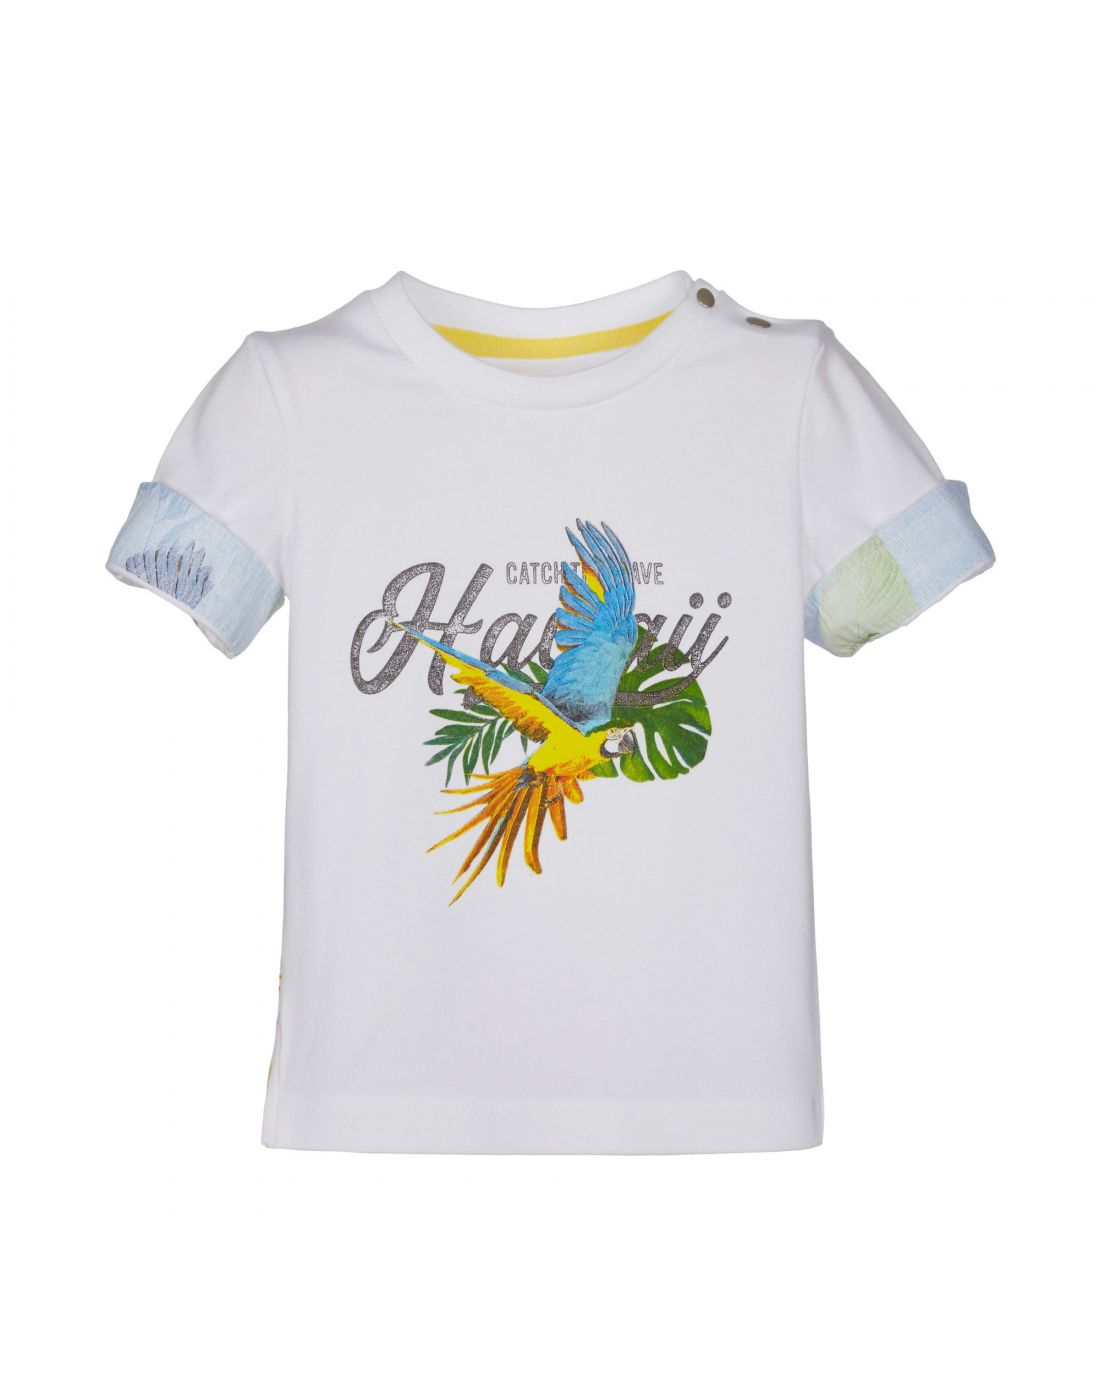 Παιδικό T-Shirt Με Print Lapin House